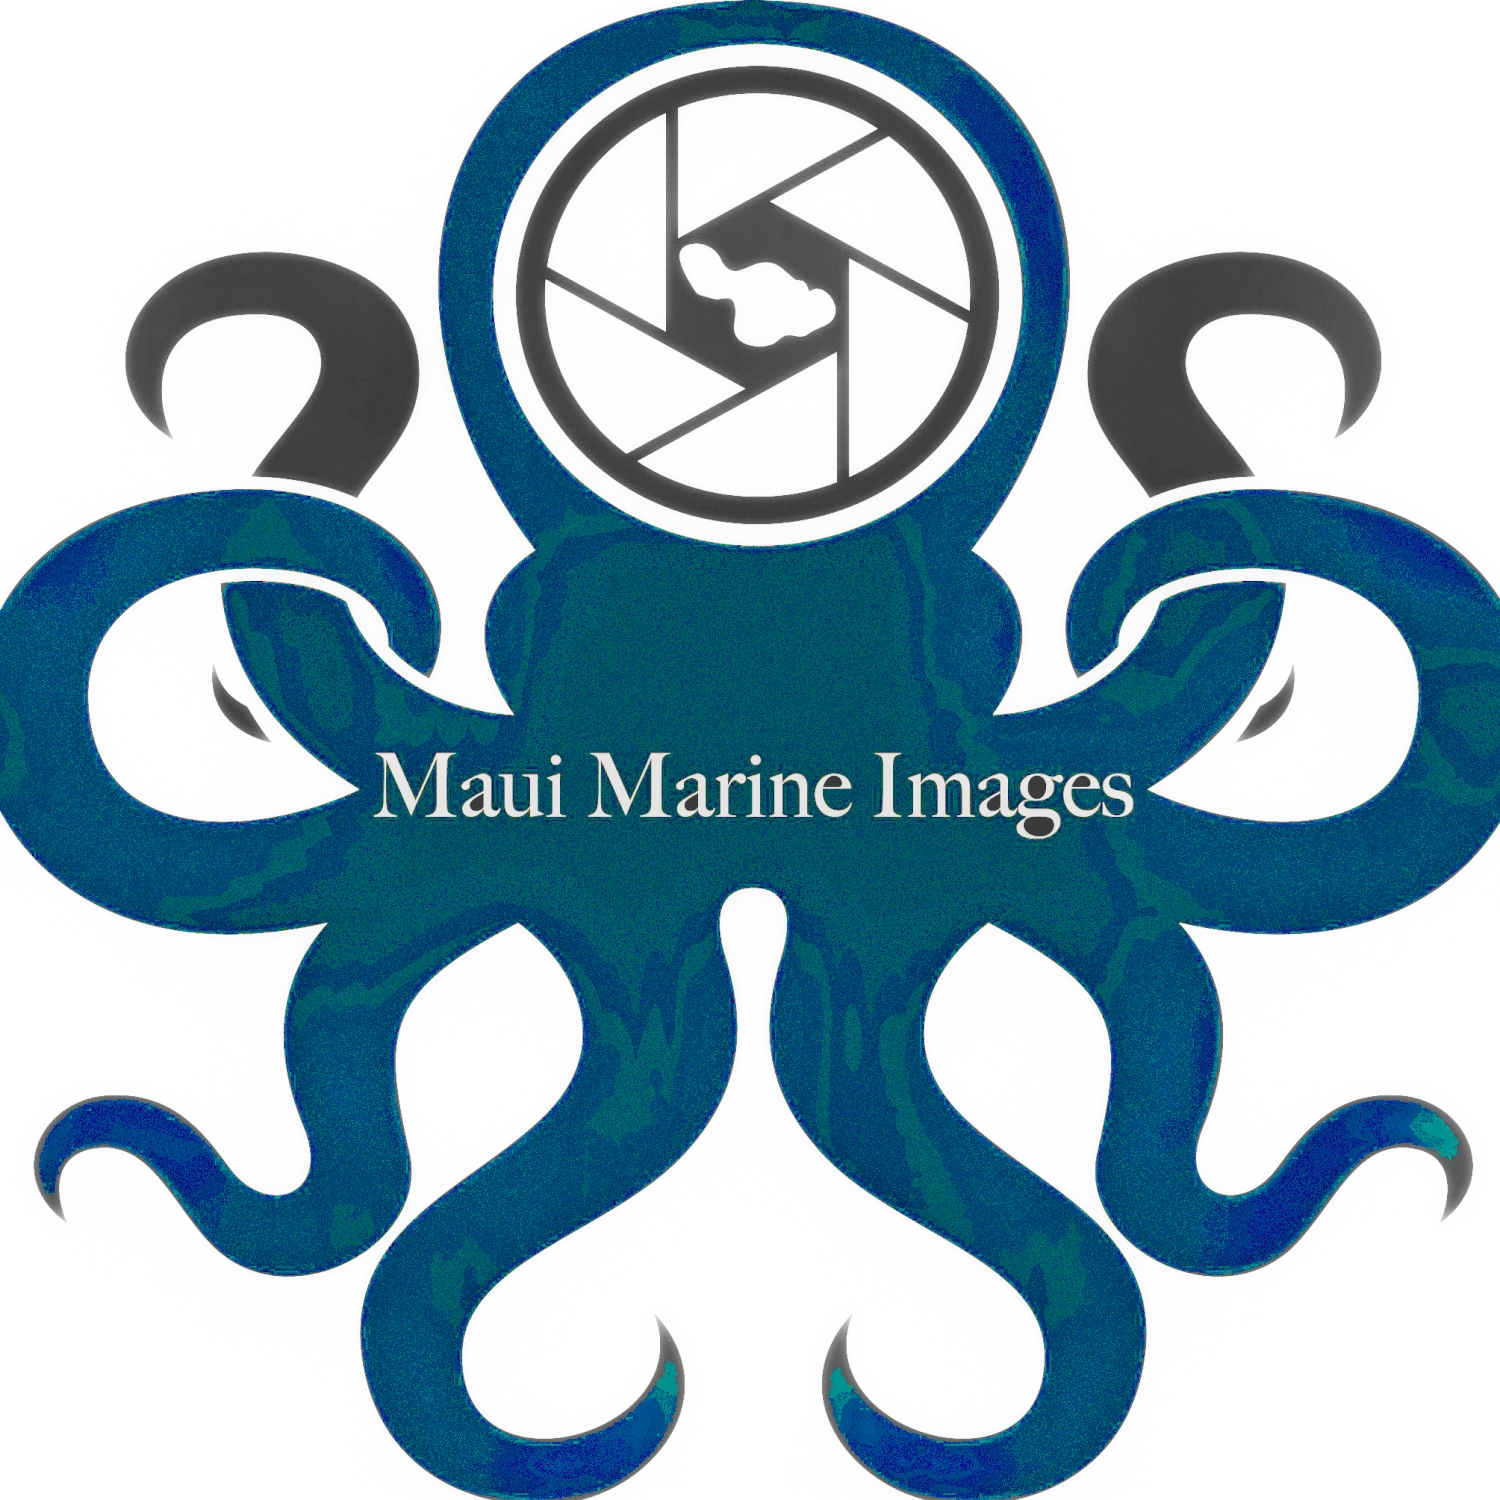 Maui Marine Images LLC